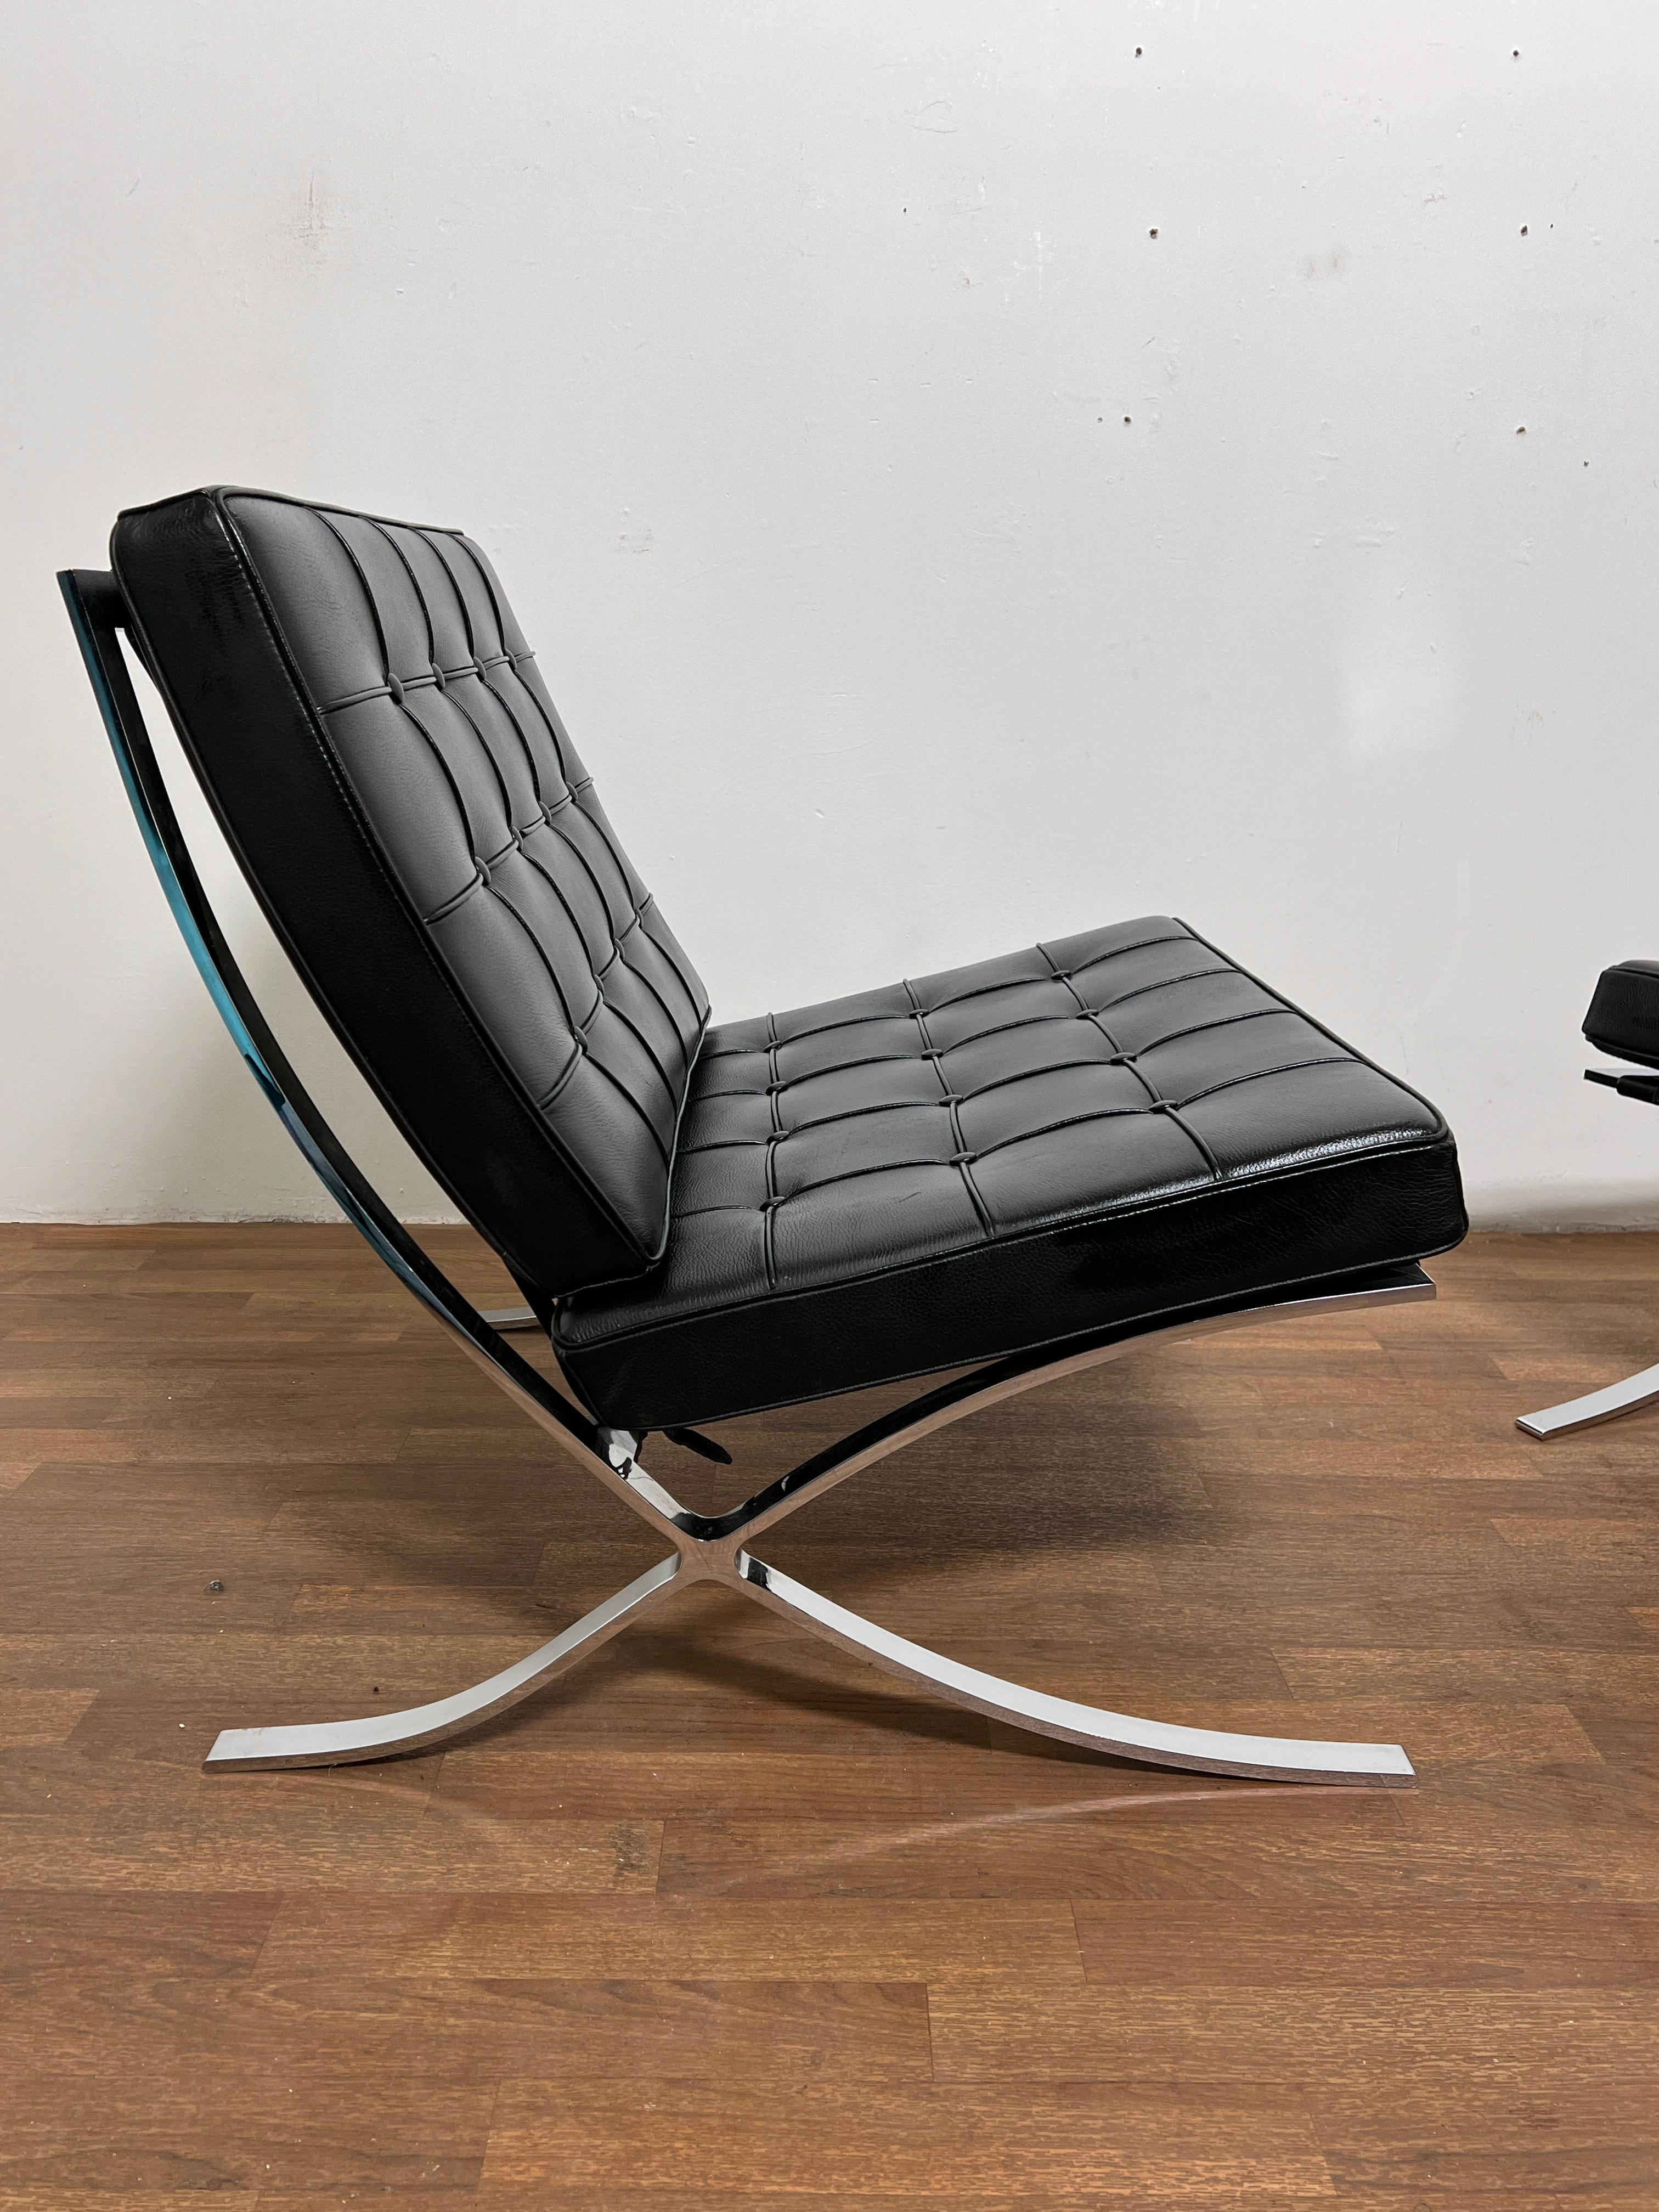 Paire de chaises de style Barcelone de Mies Van der Rohe en cuir et chrome, fabriquées en Italie pour Gordon International, vers les années 1990.